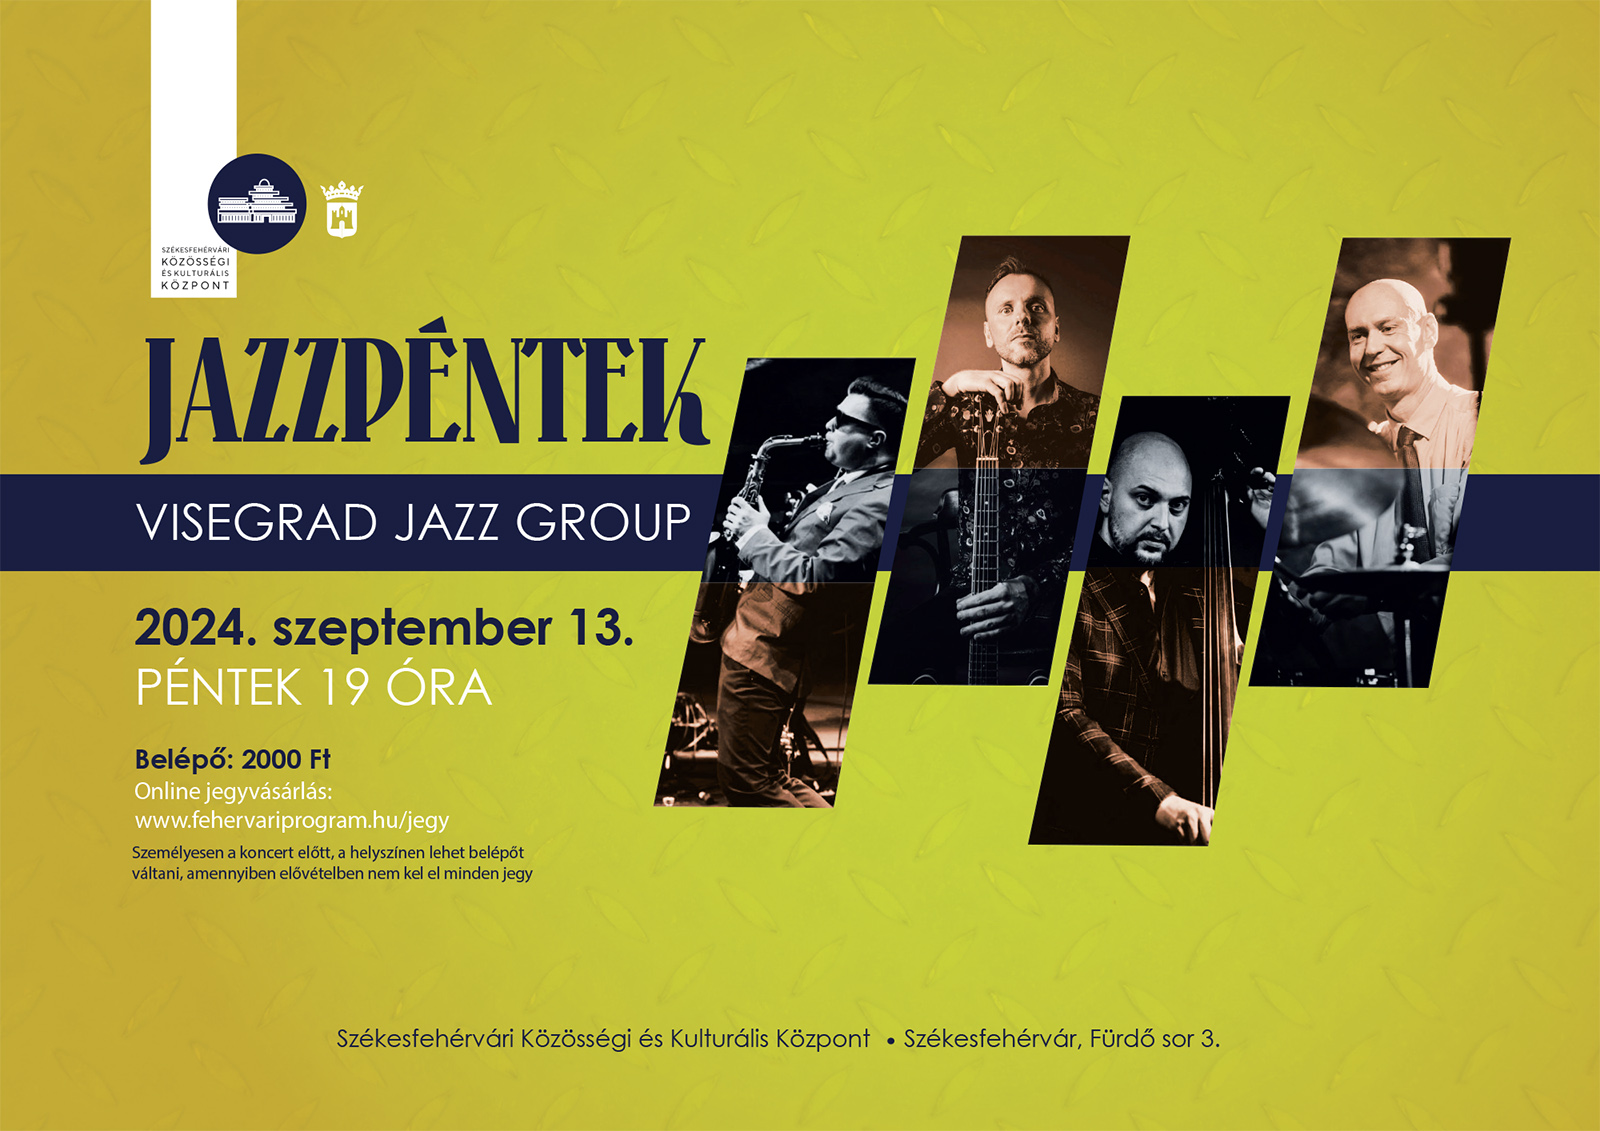 Jazzpéntek: Visegrad Jazz Group @ Székesfehérvári Közösségi és Kulturális Központ